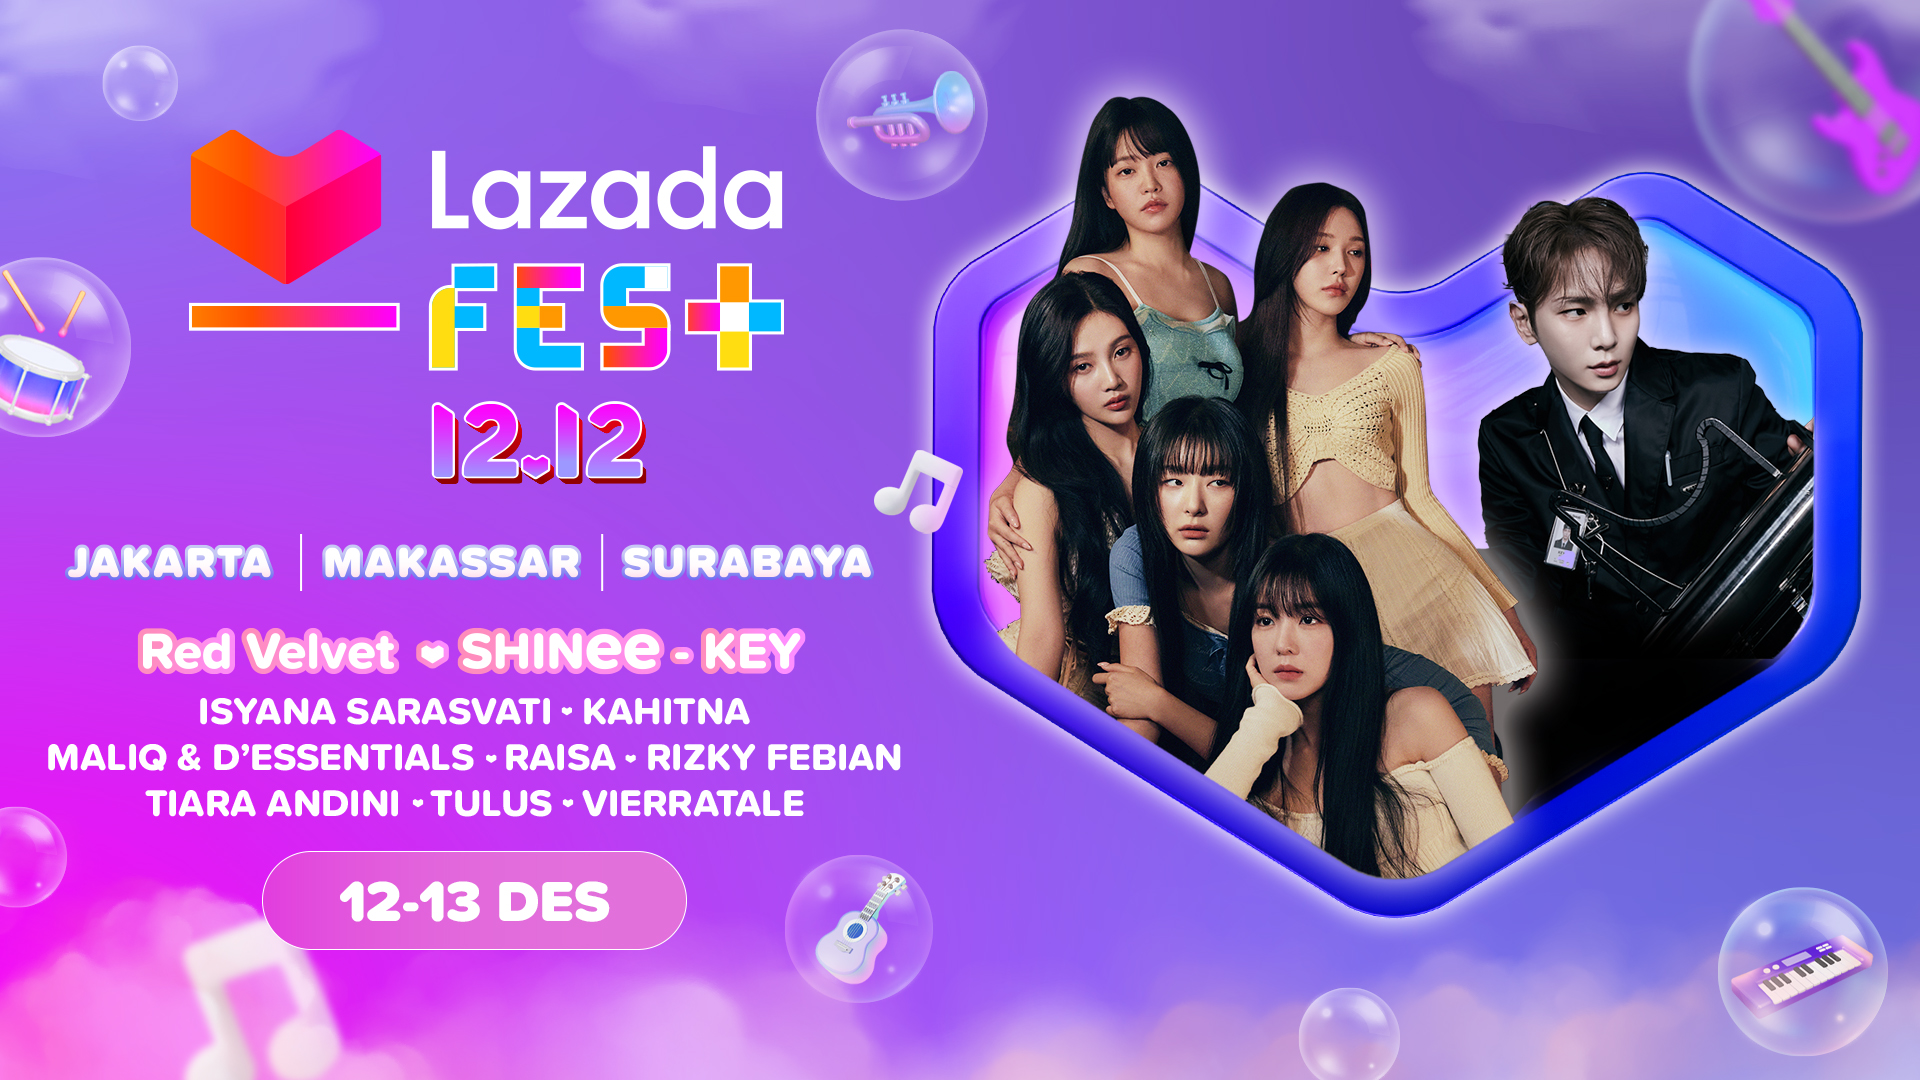 Spesial Lazada 11.11: Bisa Beli Tiket Konser Musik Lazada Fest 12.12, Ada Red Velvet, SHINee’s KEY dan Deretan Musisi Hits Tanah Air!